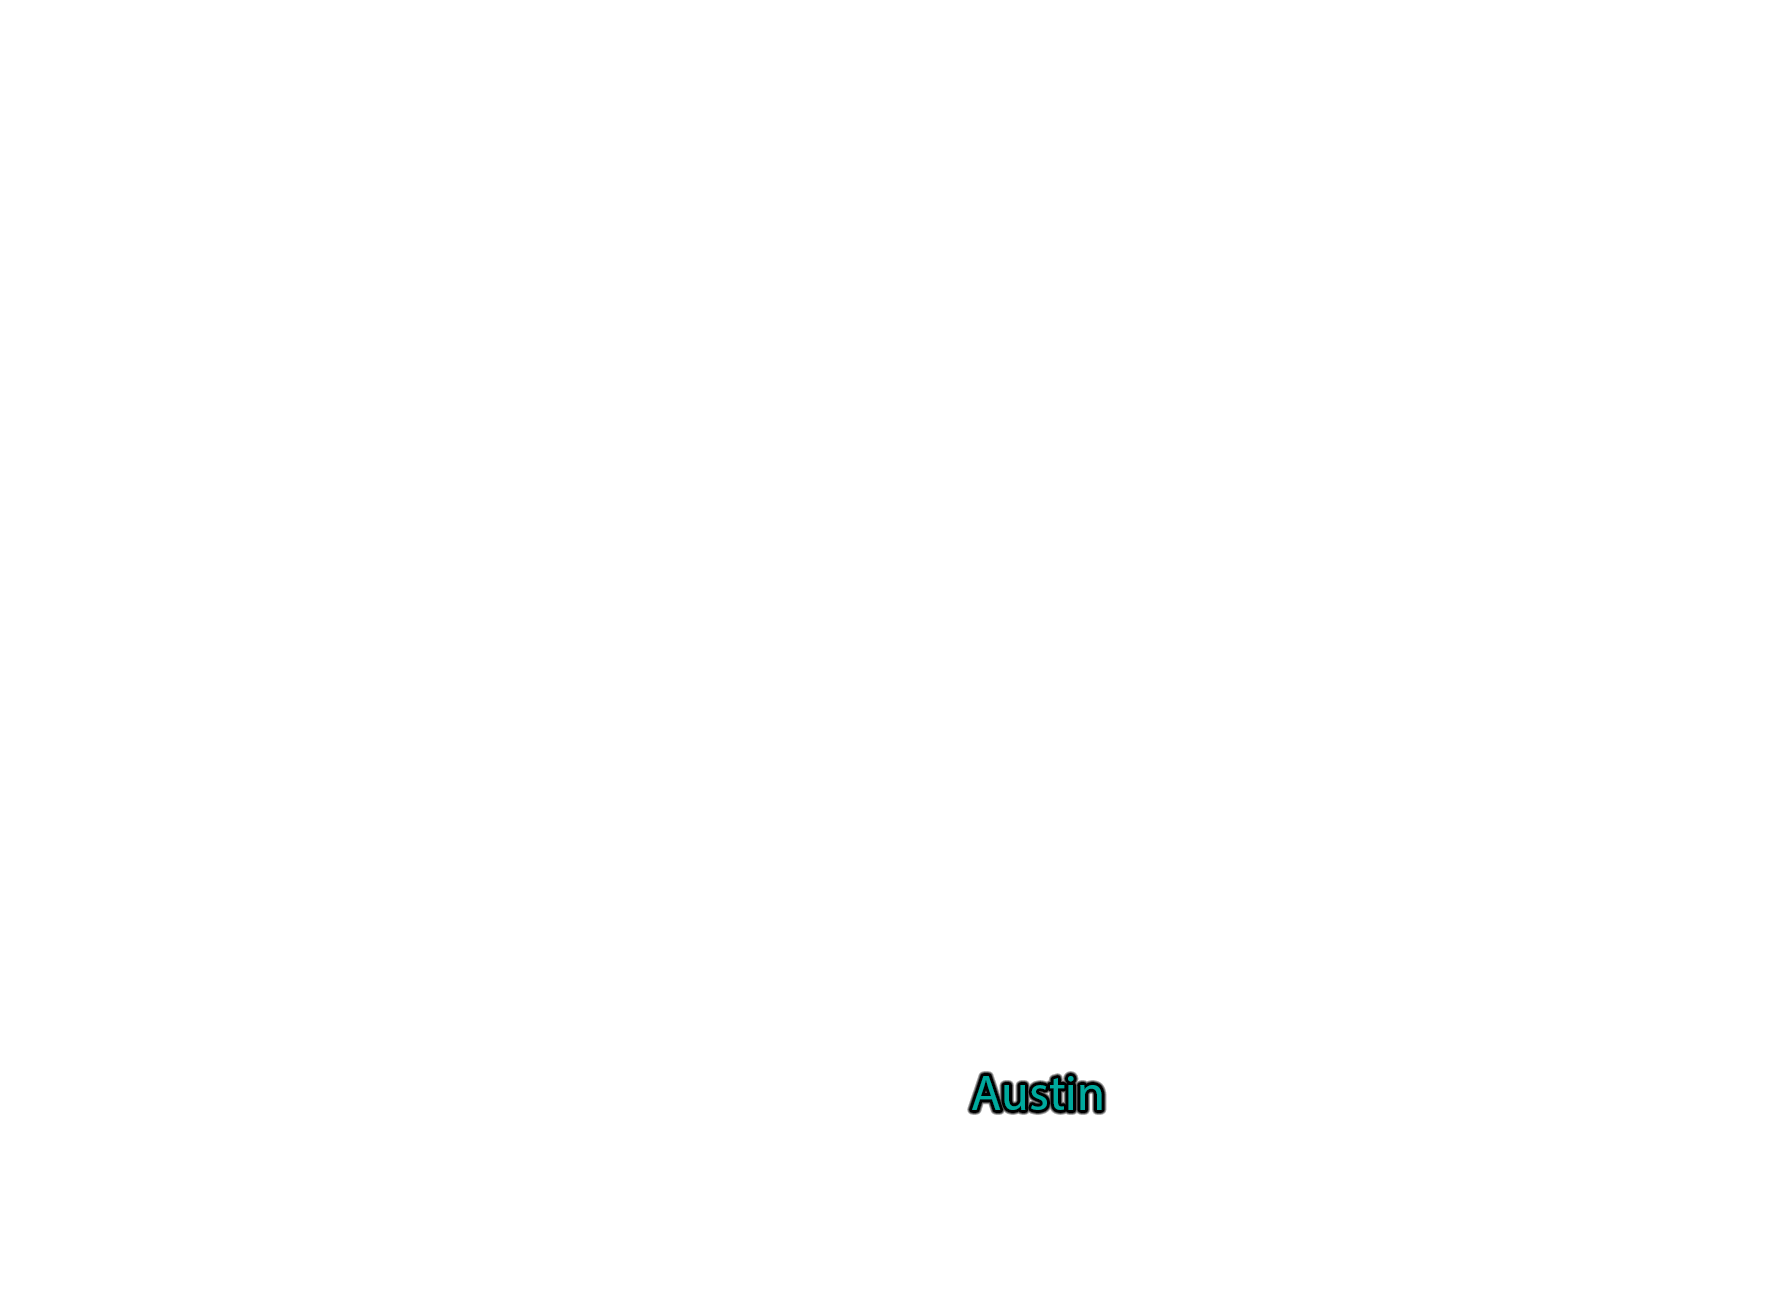 Austin label with glow